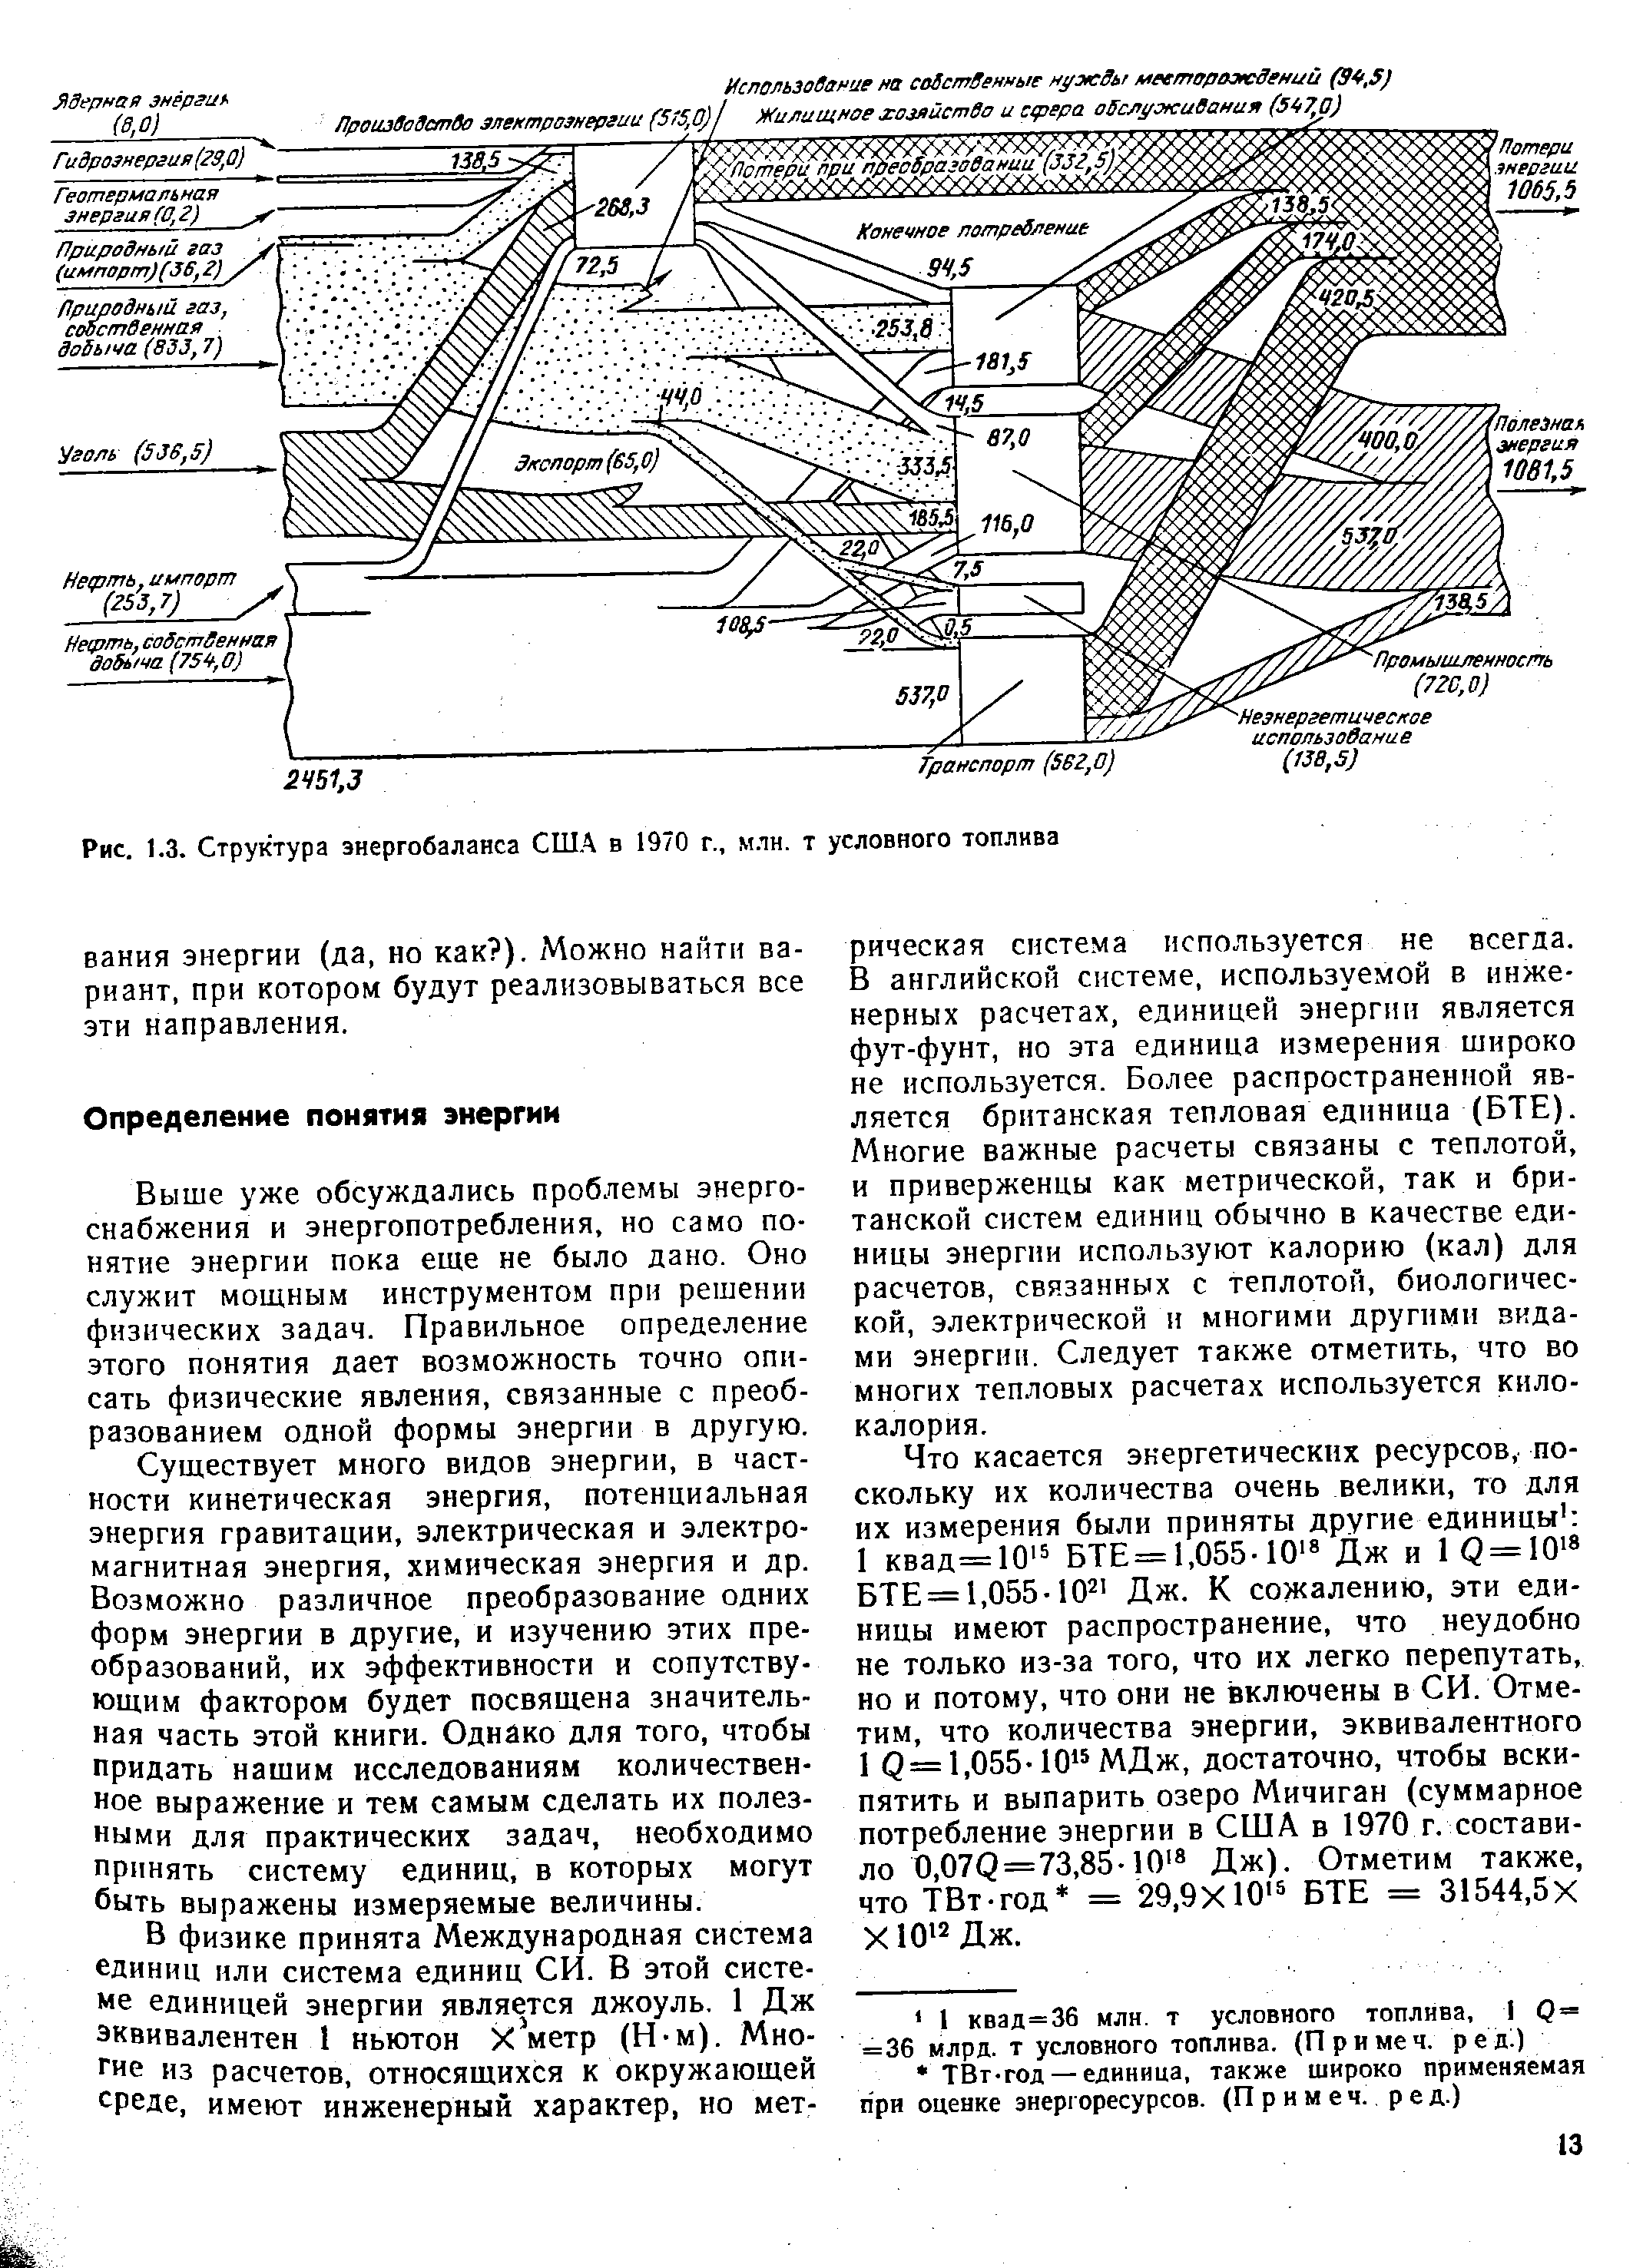 Рис. 1.3. Структура энергобаланса США в 1970 г., млн. т условного топлива
